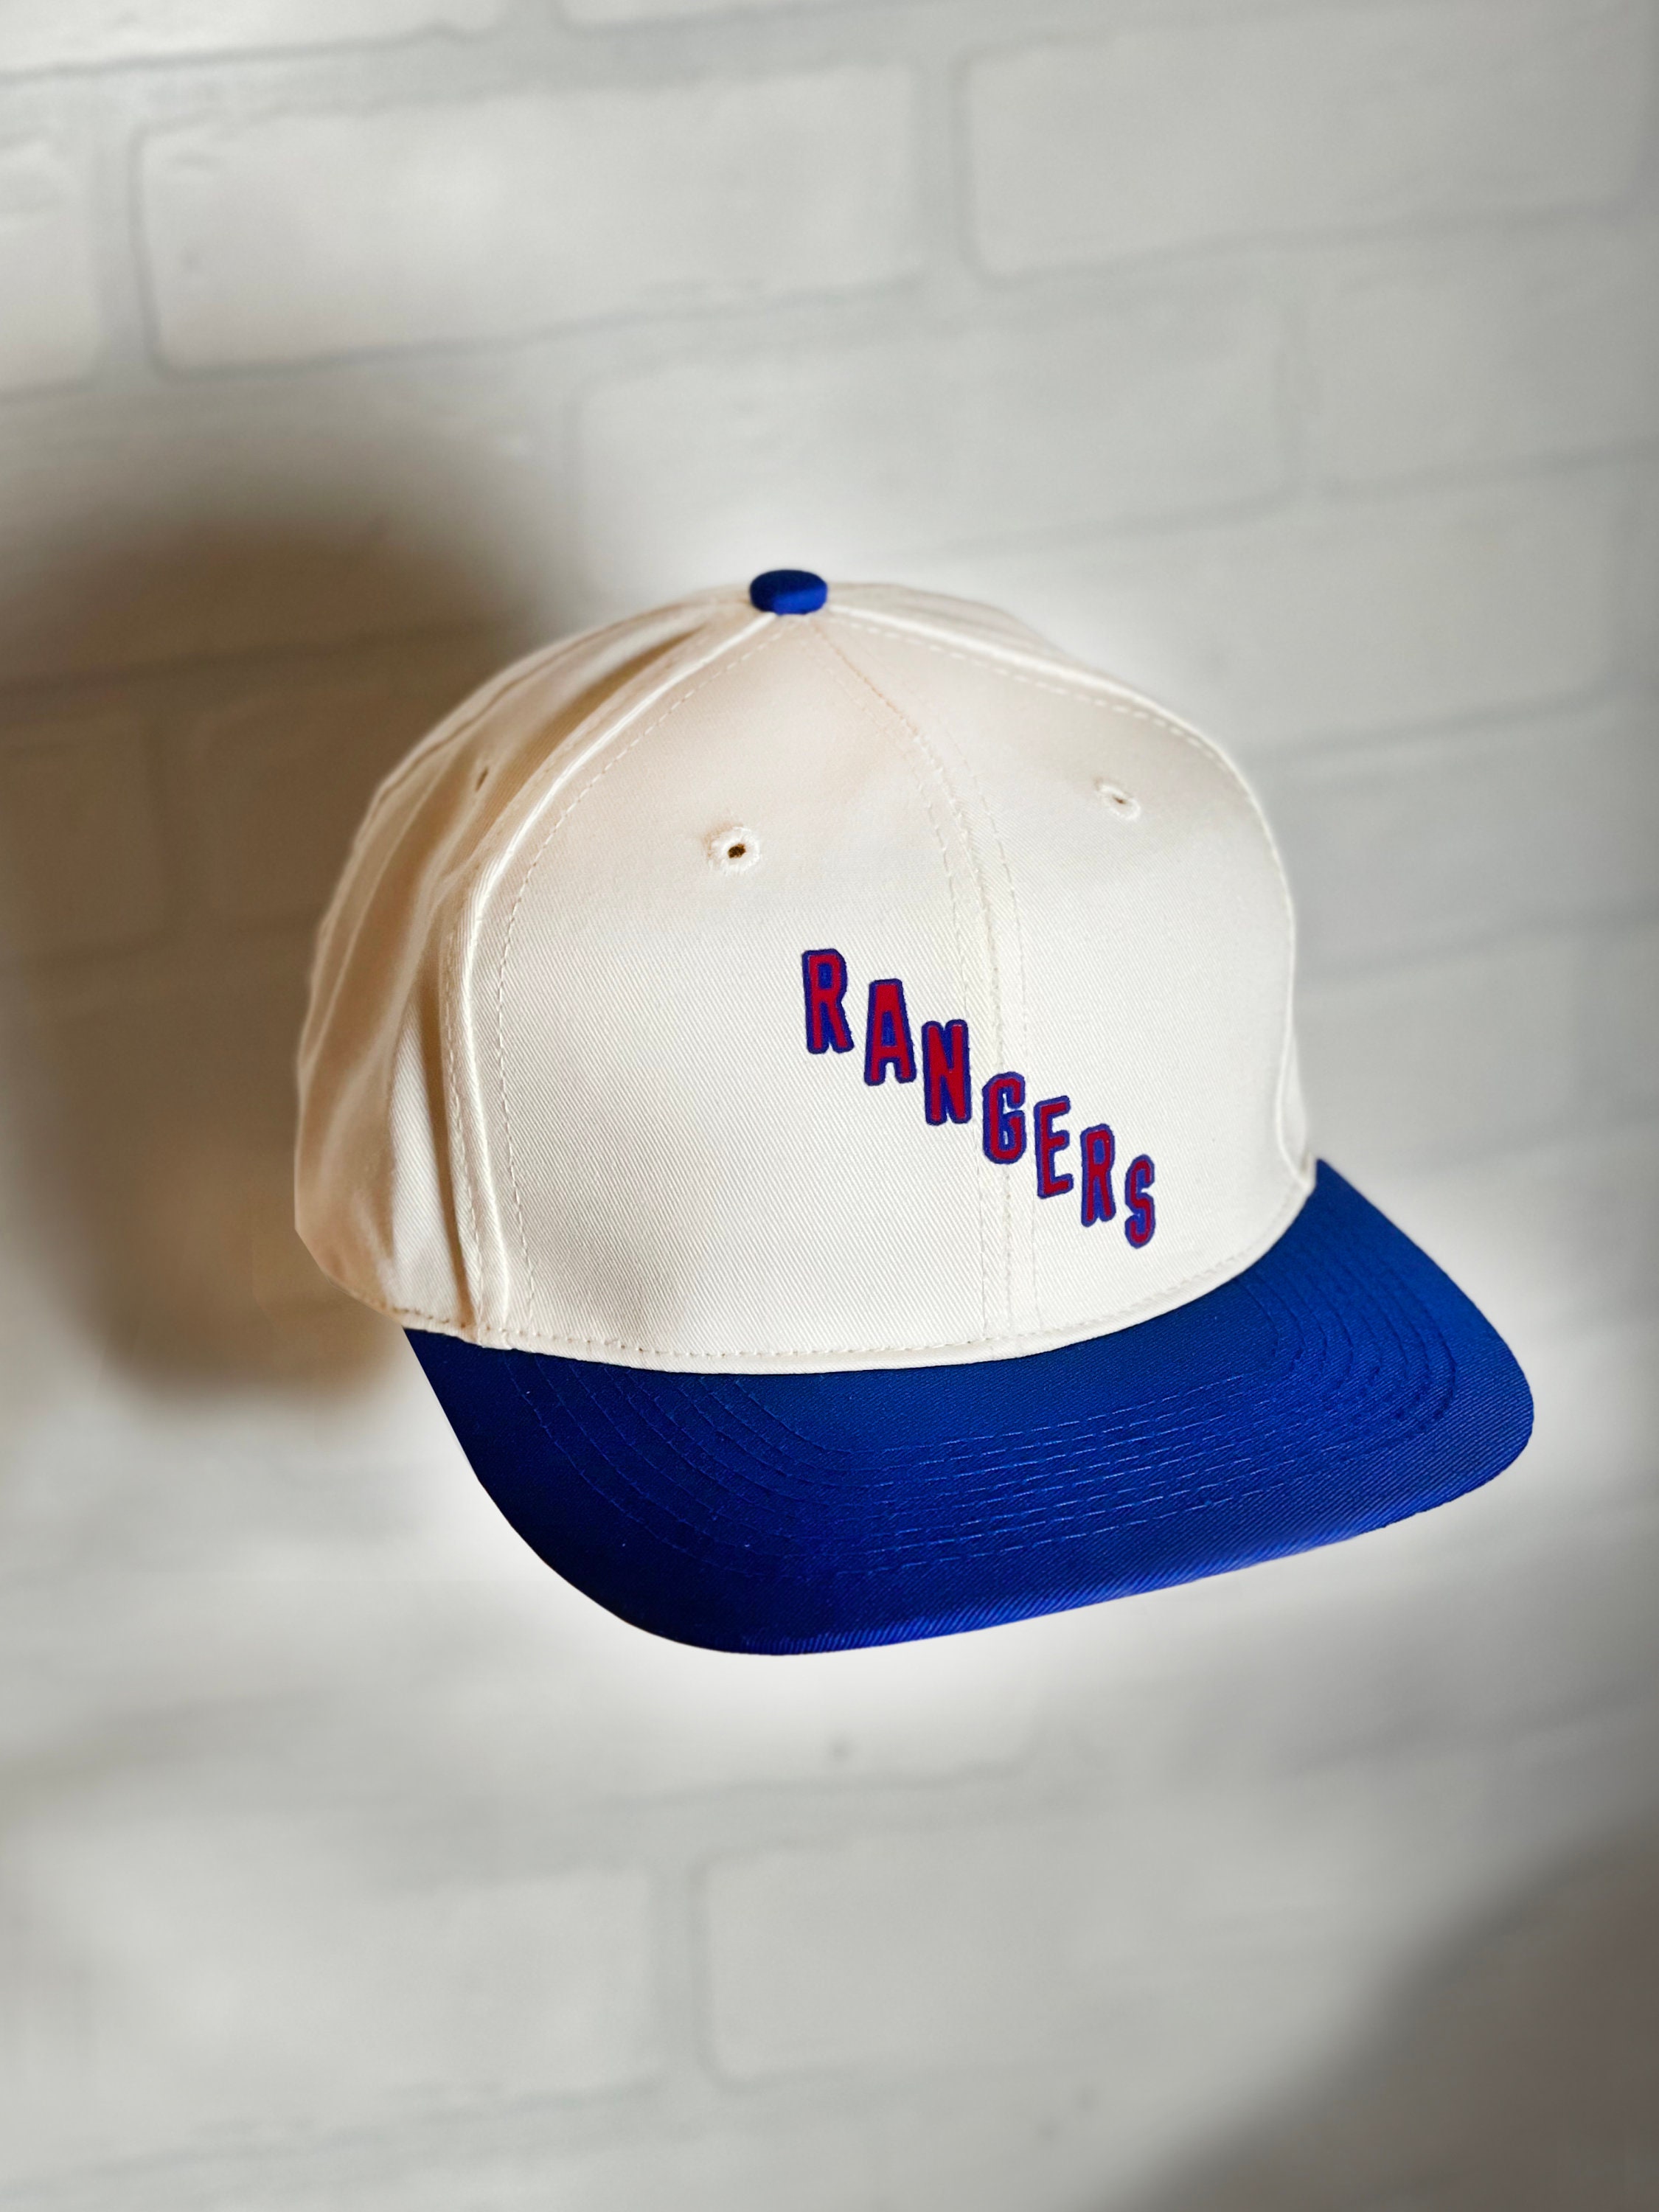 Vintage New York Rangers Lady Liberty CCM Snapback Hockey Hat